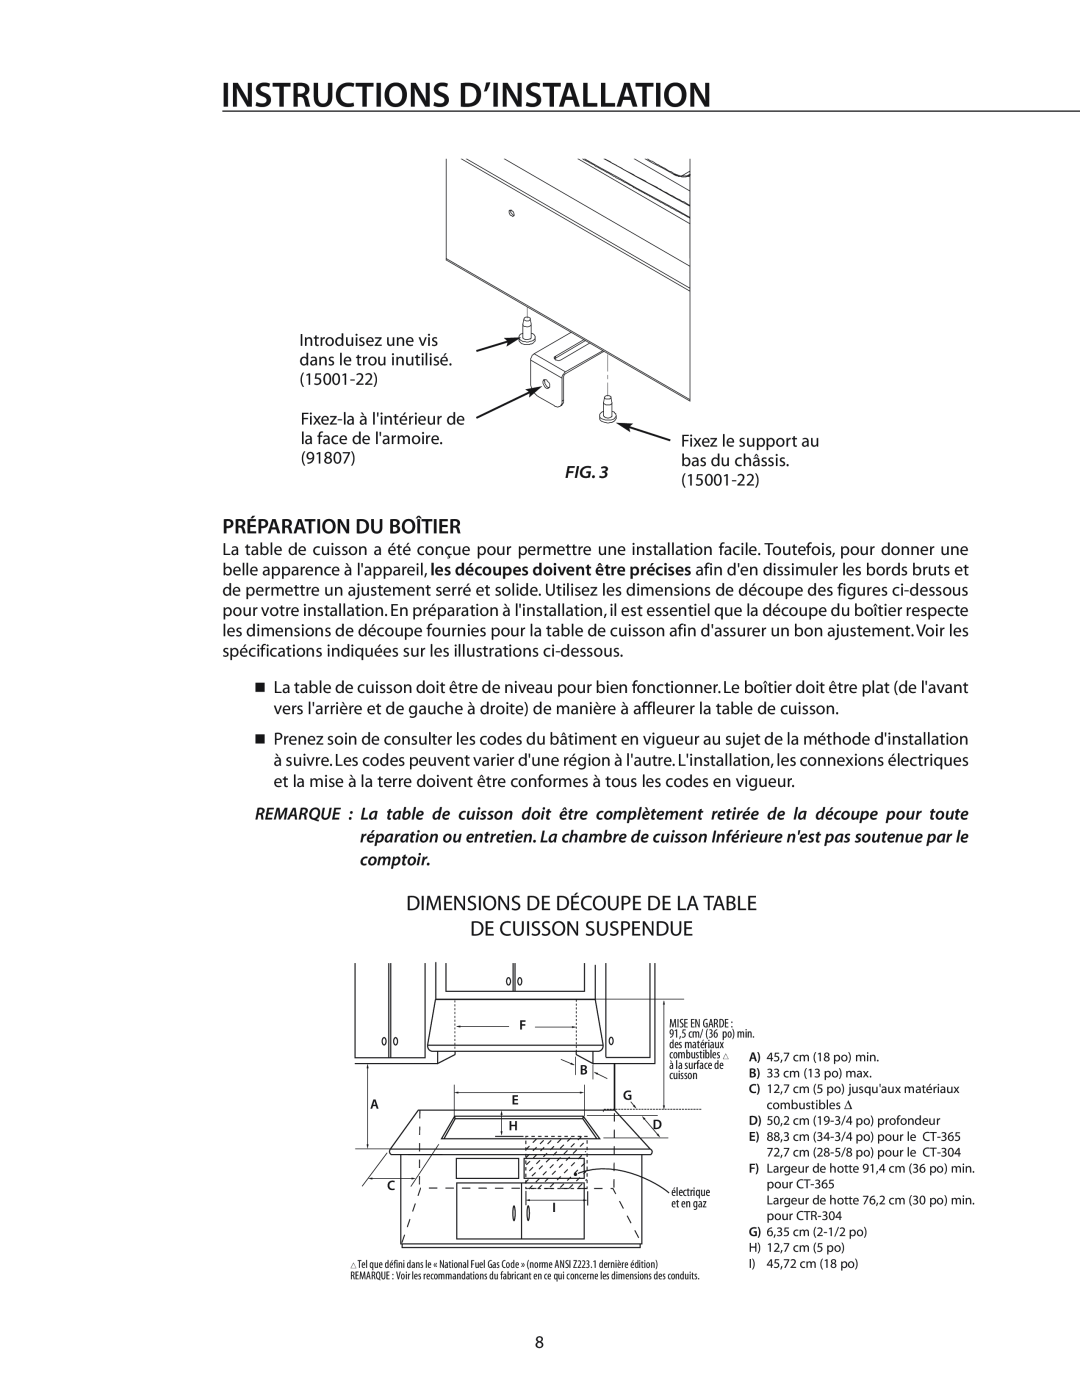 DCS T-365BK Préparation Du Boîtier, Dimensions De Découpe De La Table De Cuisson Suspendue, Instructions D’Installation 